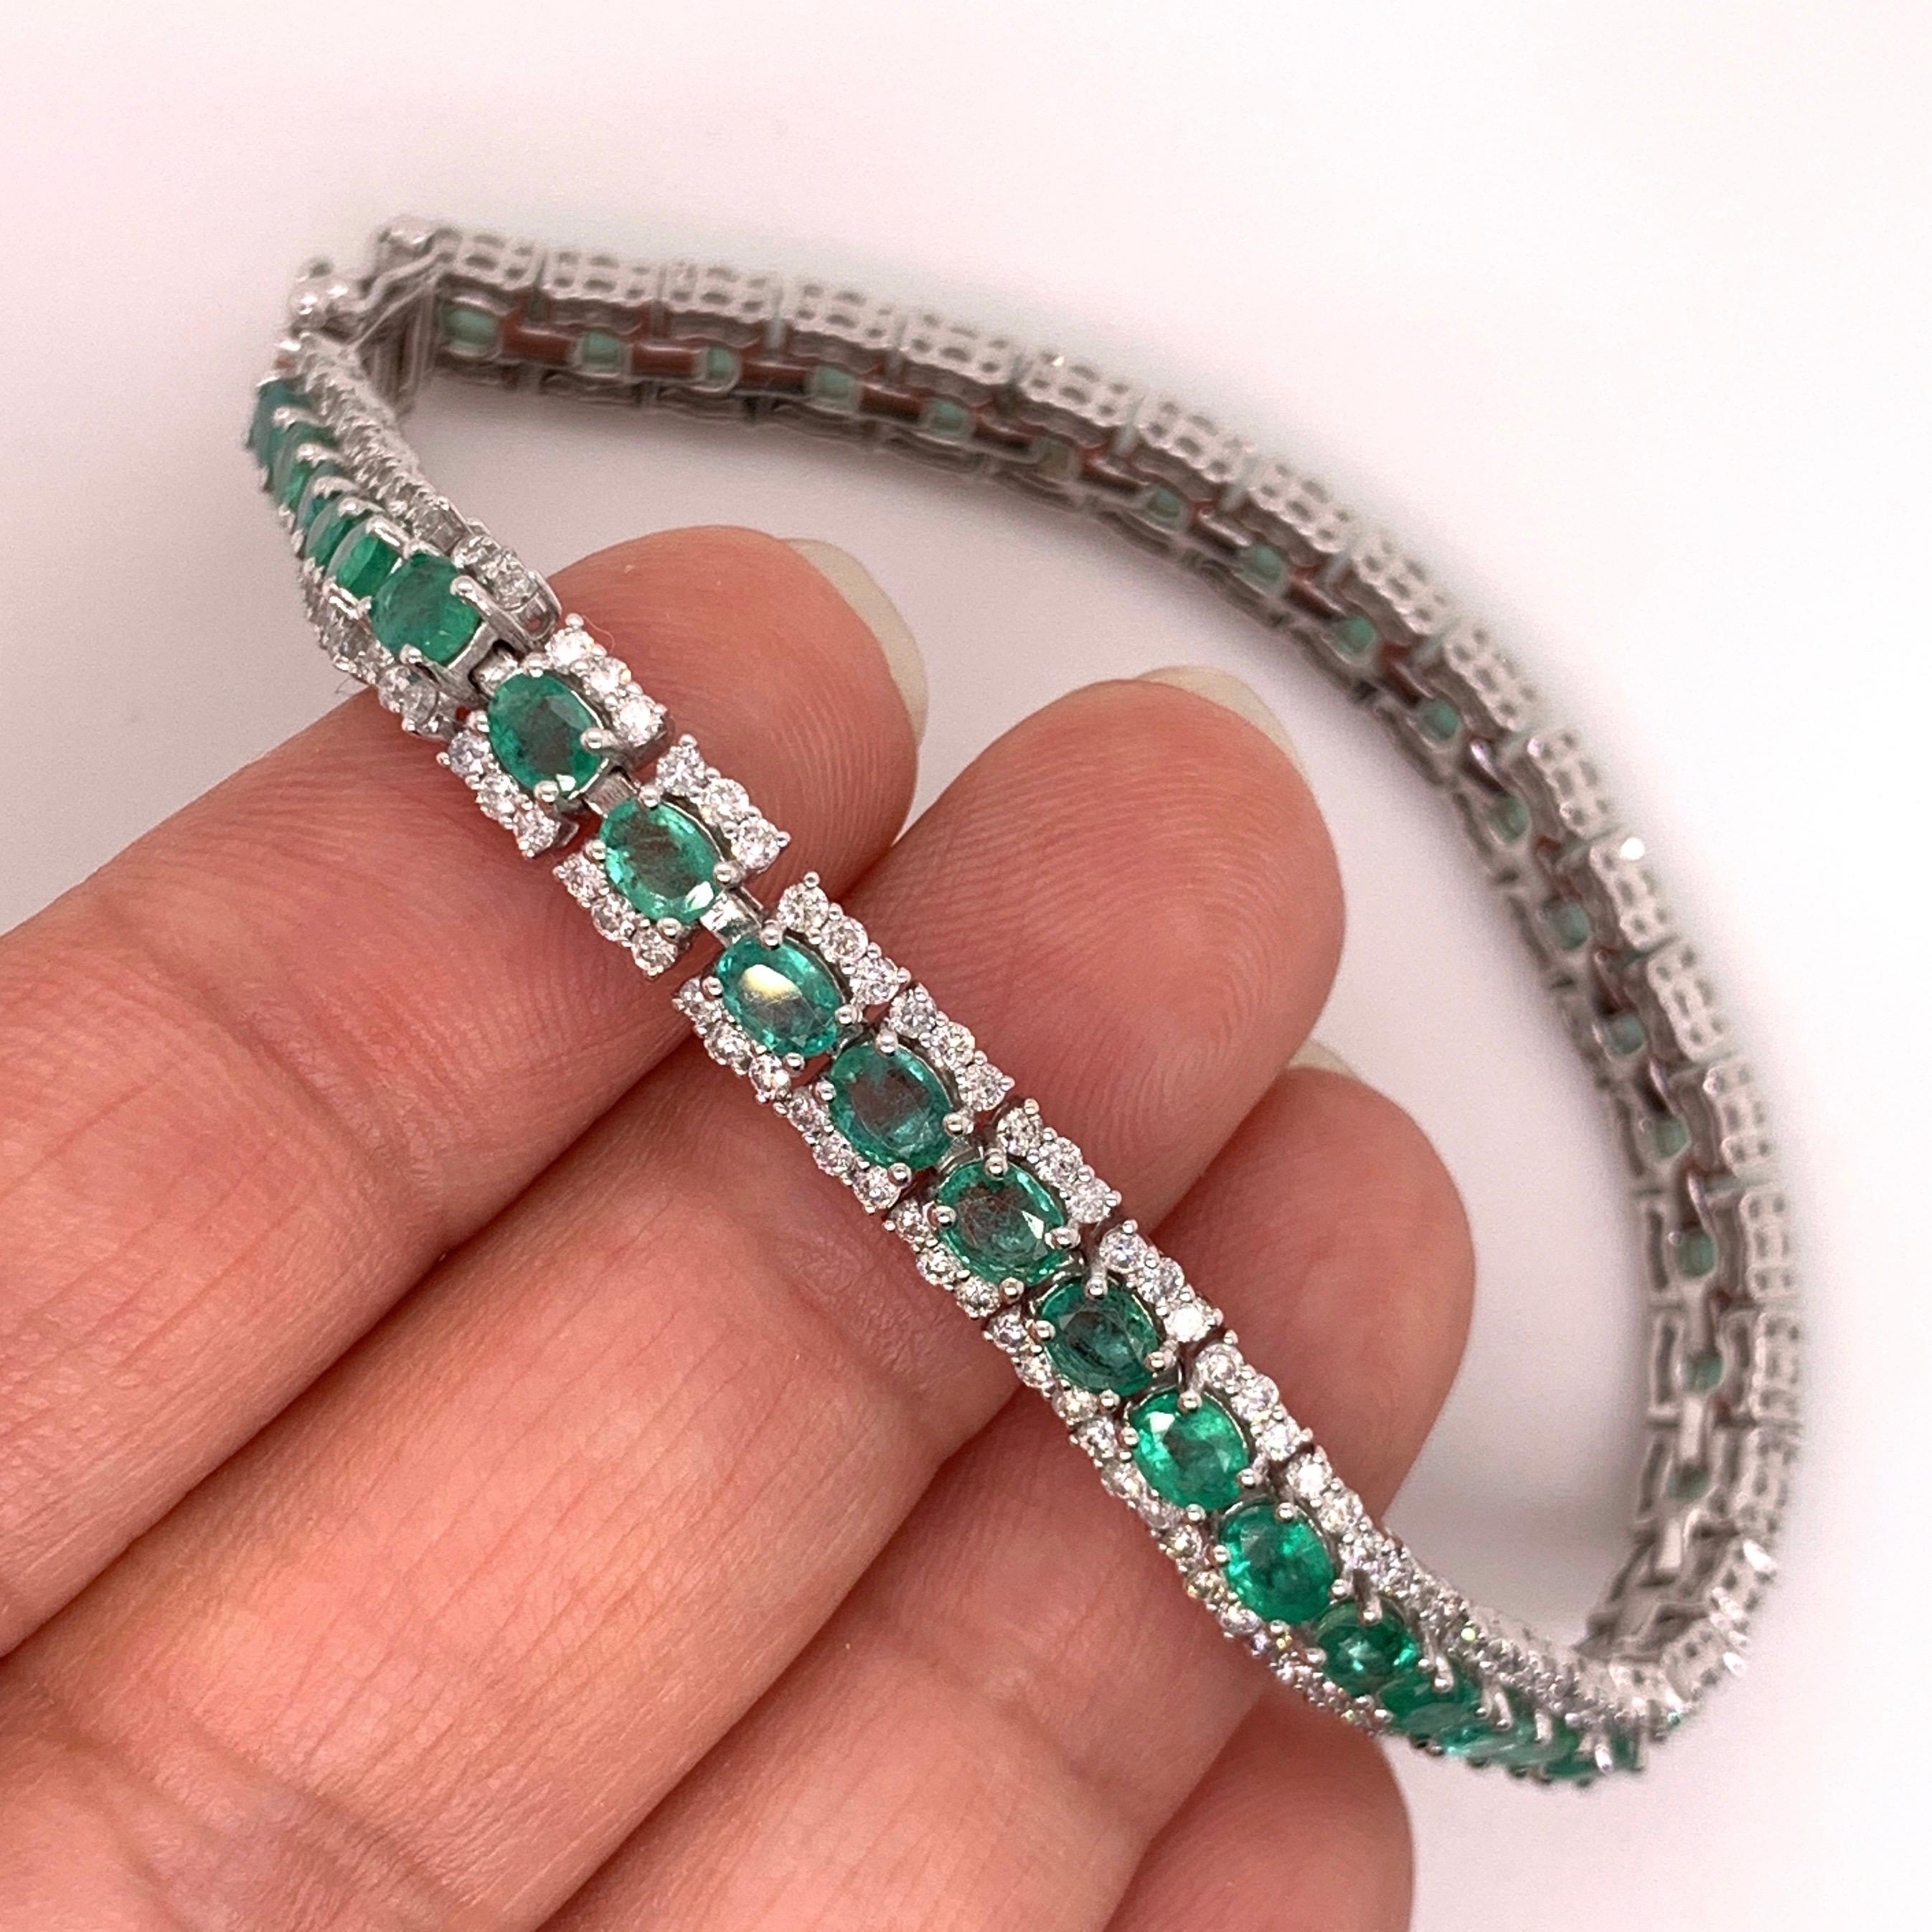 Oval Cut 5.72 Carat Emerald Bangle Bracelet